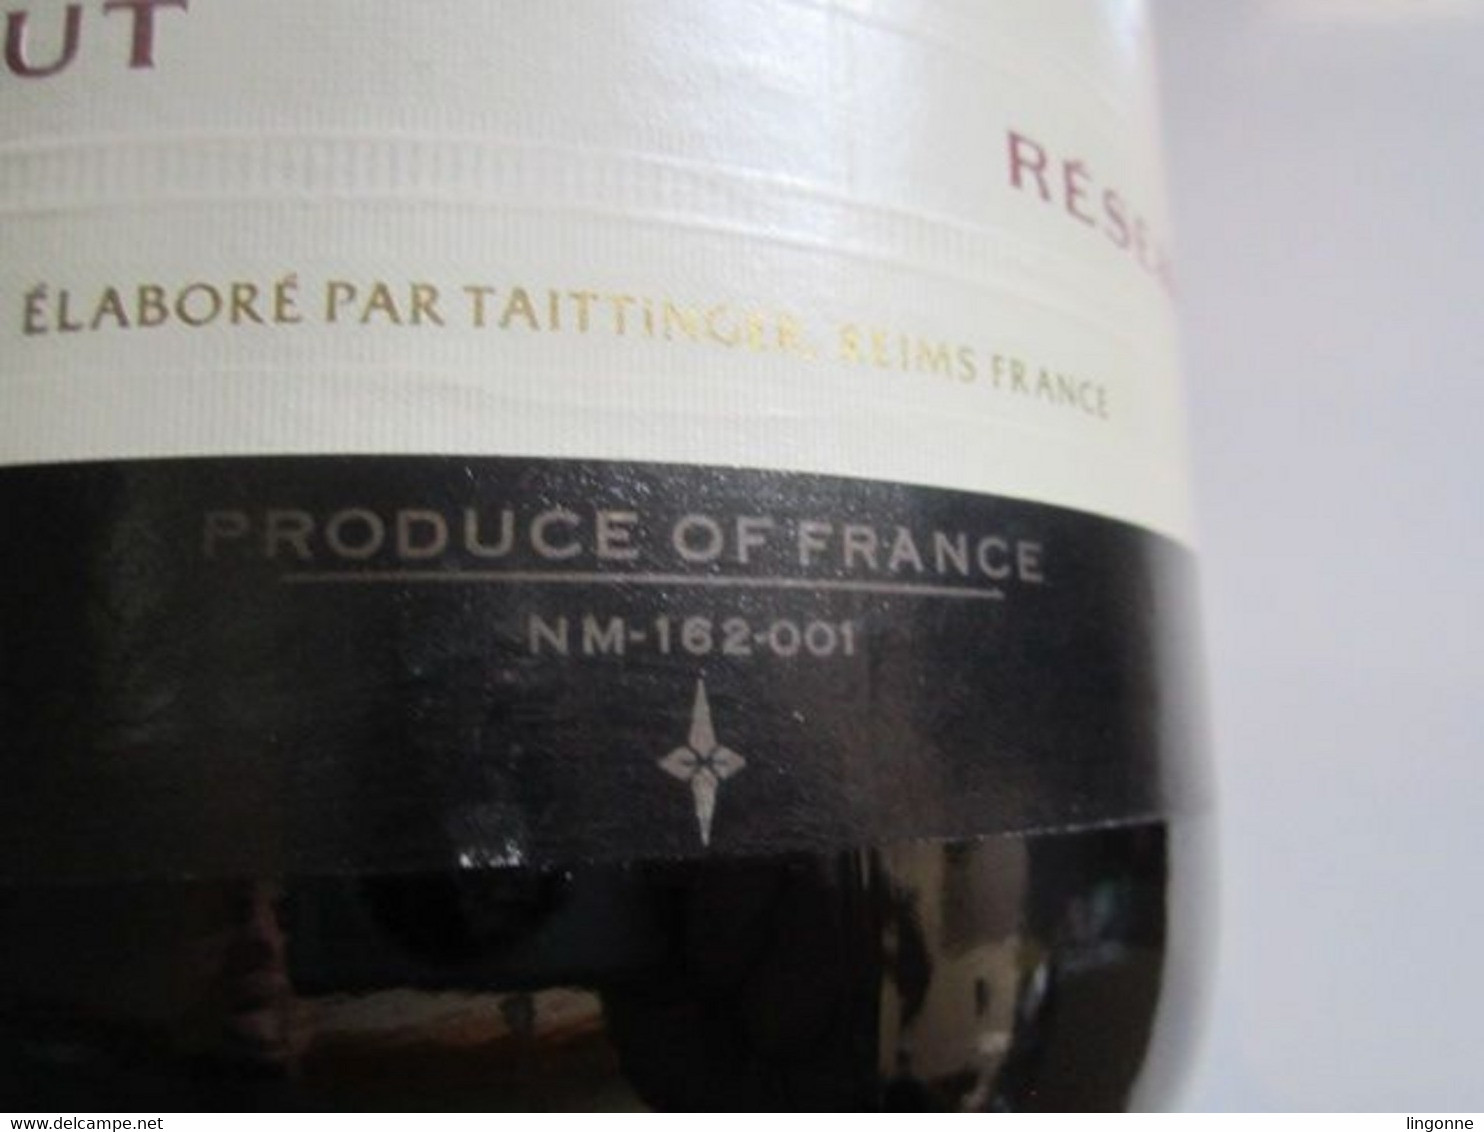 CHAMPAGNE TAITTINGER REIMS RESERVE 3 Litres Jéroboam de Champagne Factice VIDE non ouverte. Poids 3037 Grammes